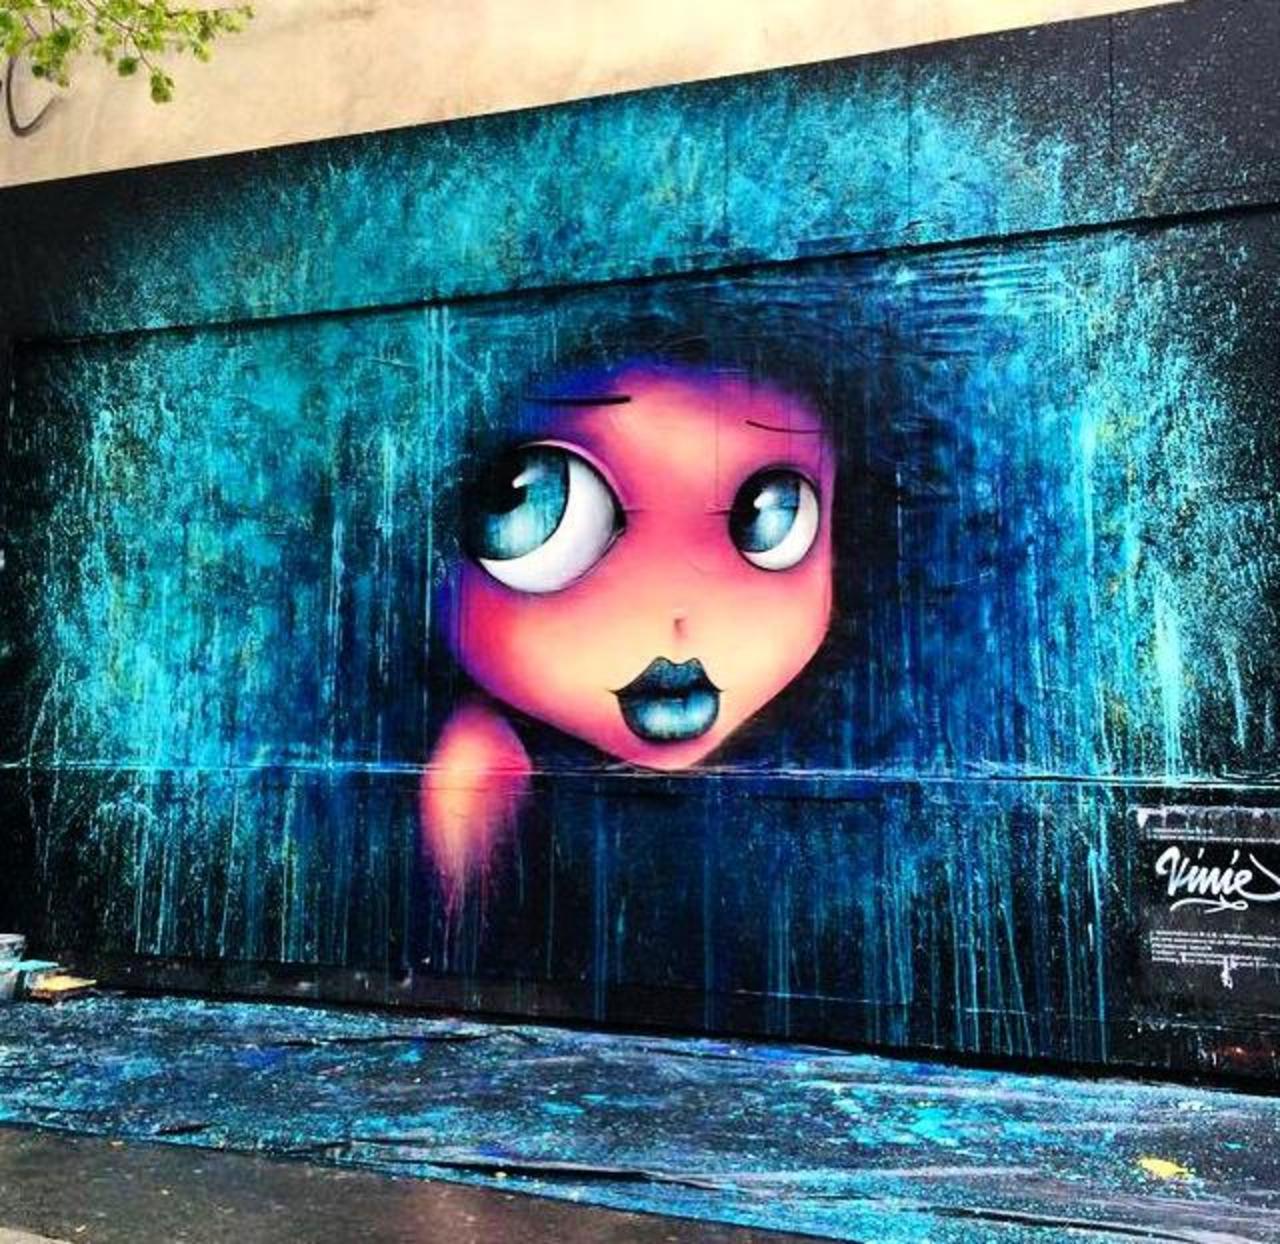 New Street Art by VinieGraffiti in Paris

#art #arte #graffiti #streetart http://t.co/1cczZALSQx